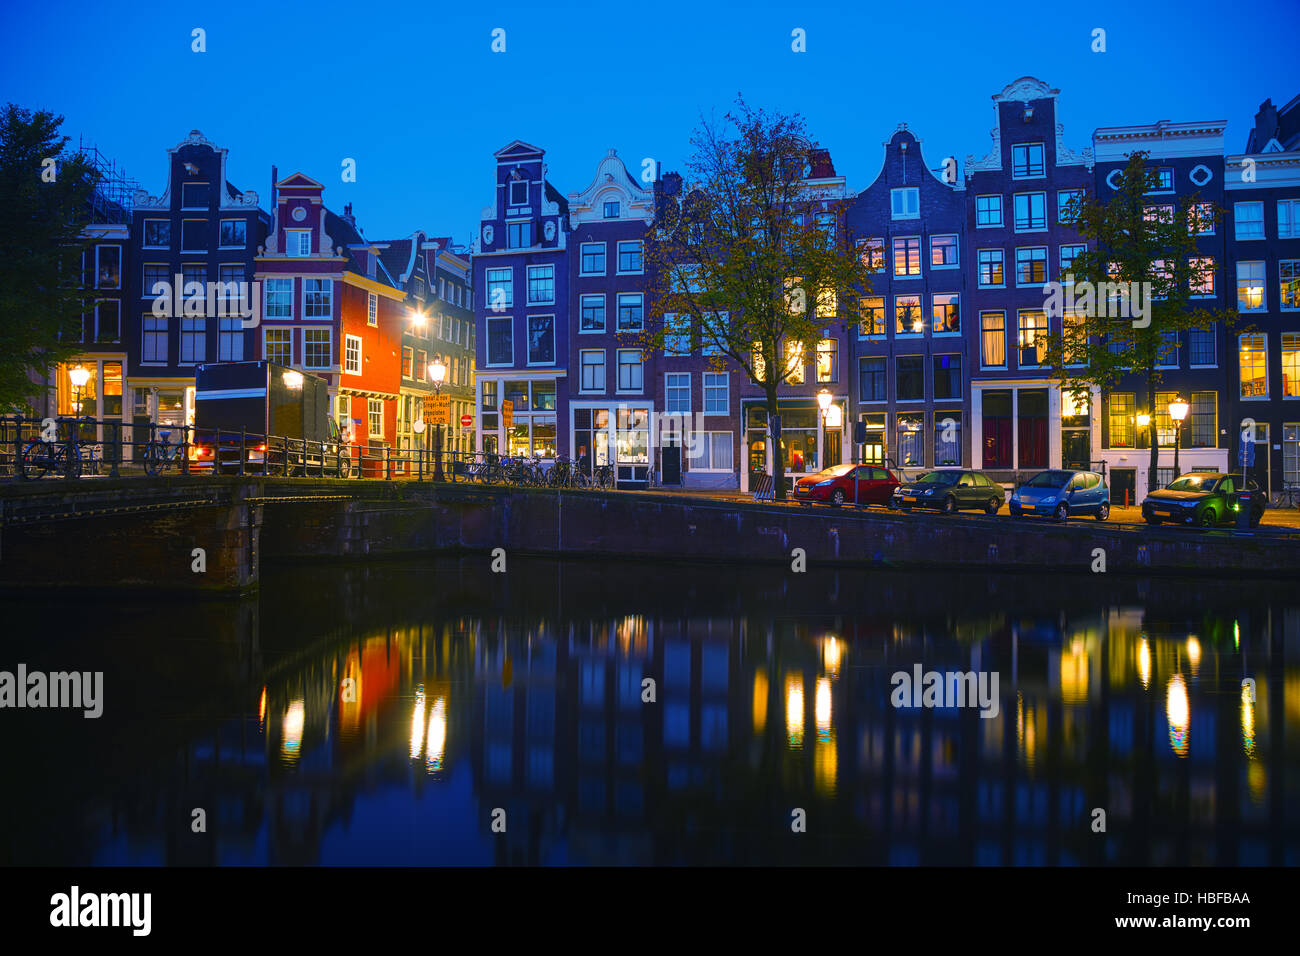 Vue sur la ville d'Amsterdam avec des canaux de nuit Banque D'Images